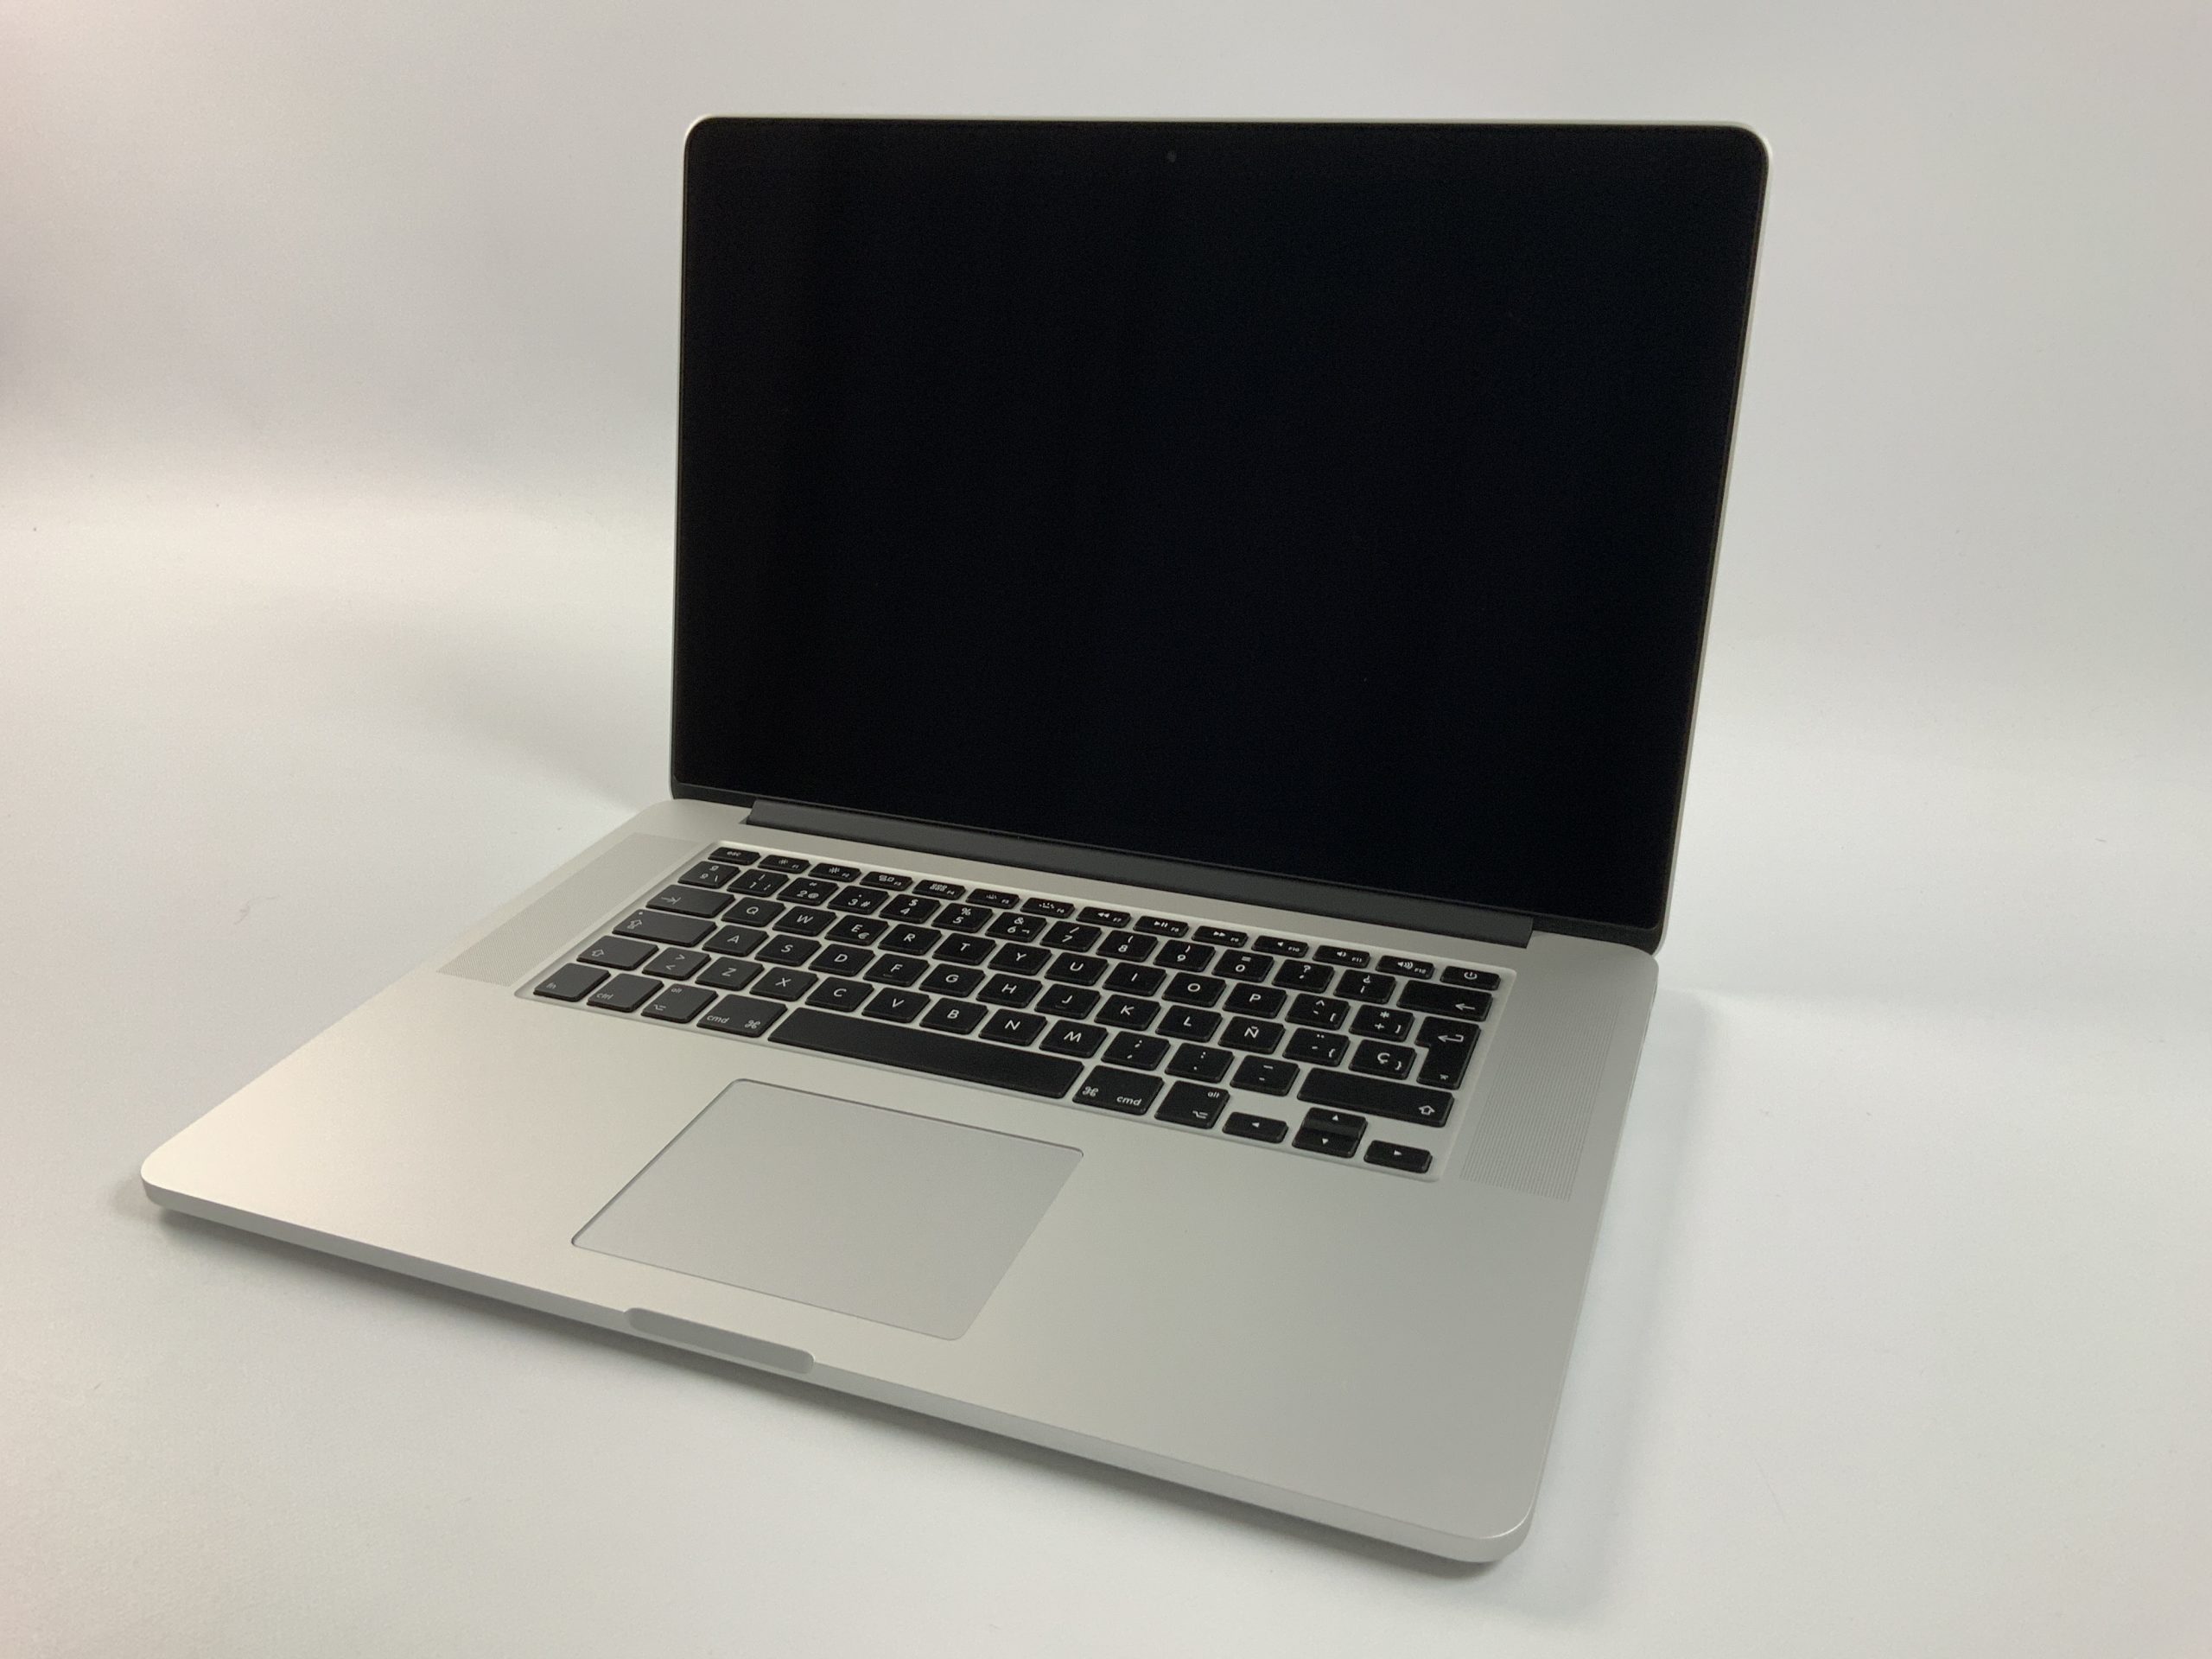 MacBook Pro Retina 15" Mid 2015 (Intel Quad-Core i7 2.8 GHz 16 GB RAM 512 GB SSD), Intel Quad-Core i7 2.8 GHz, 16 GB RAM, 512 GB SSD, Afbeelding 1